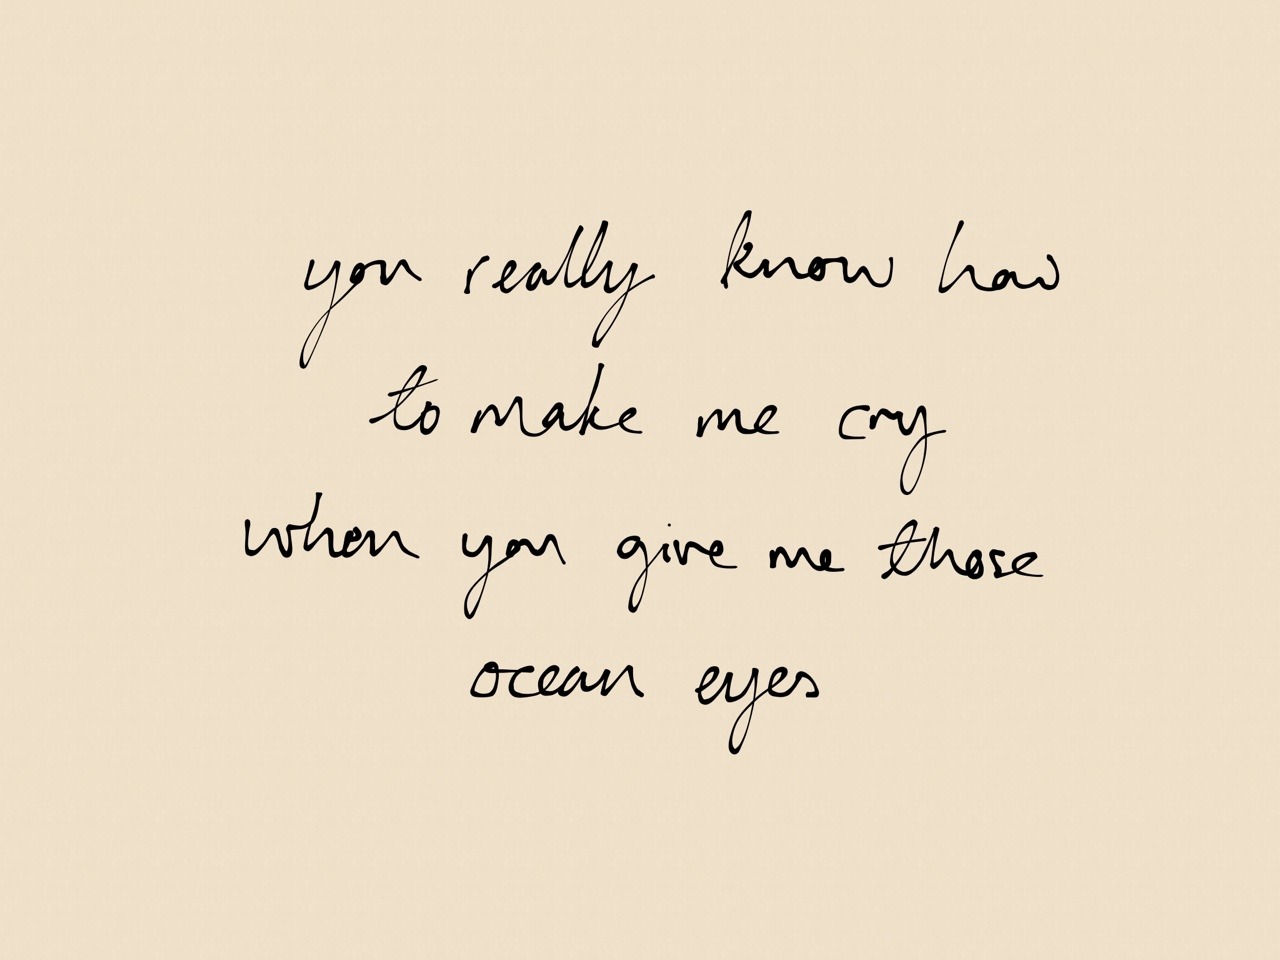 ocean eyes lyrics